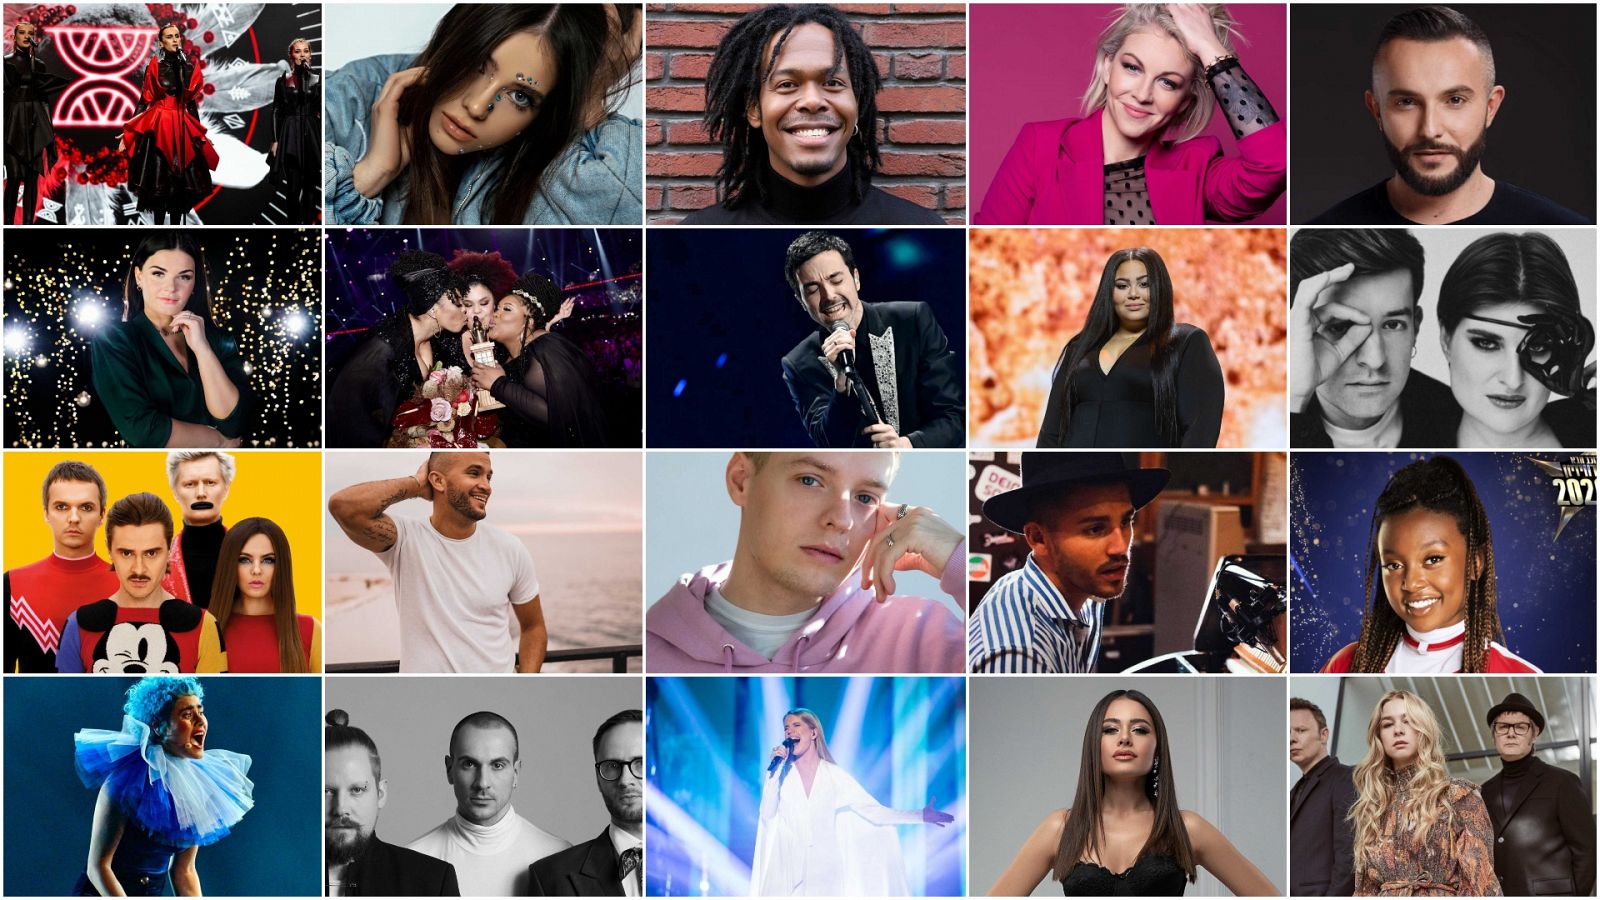 Eurovisión 2020 - Eurovision Song Celebration: Semifinal 1 - Ver ahora